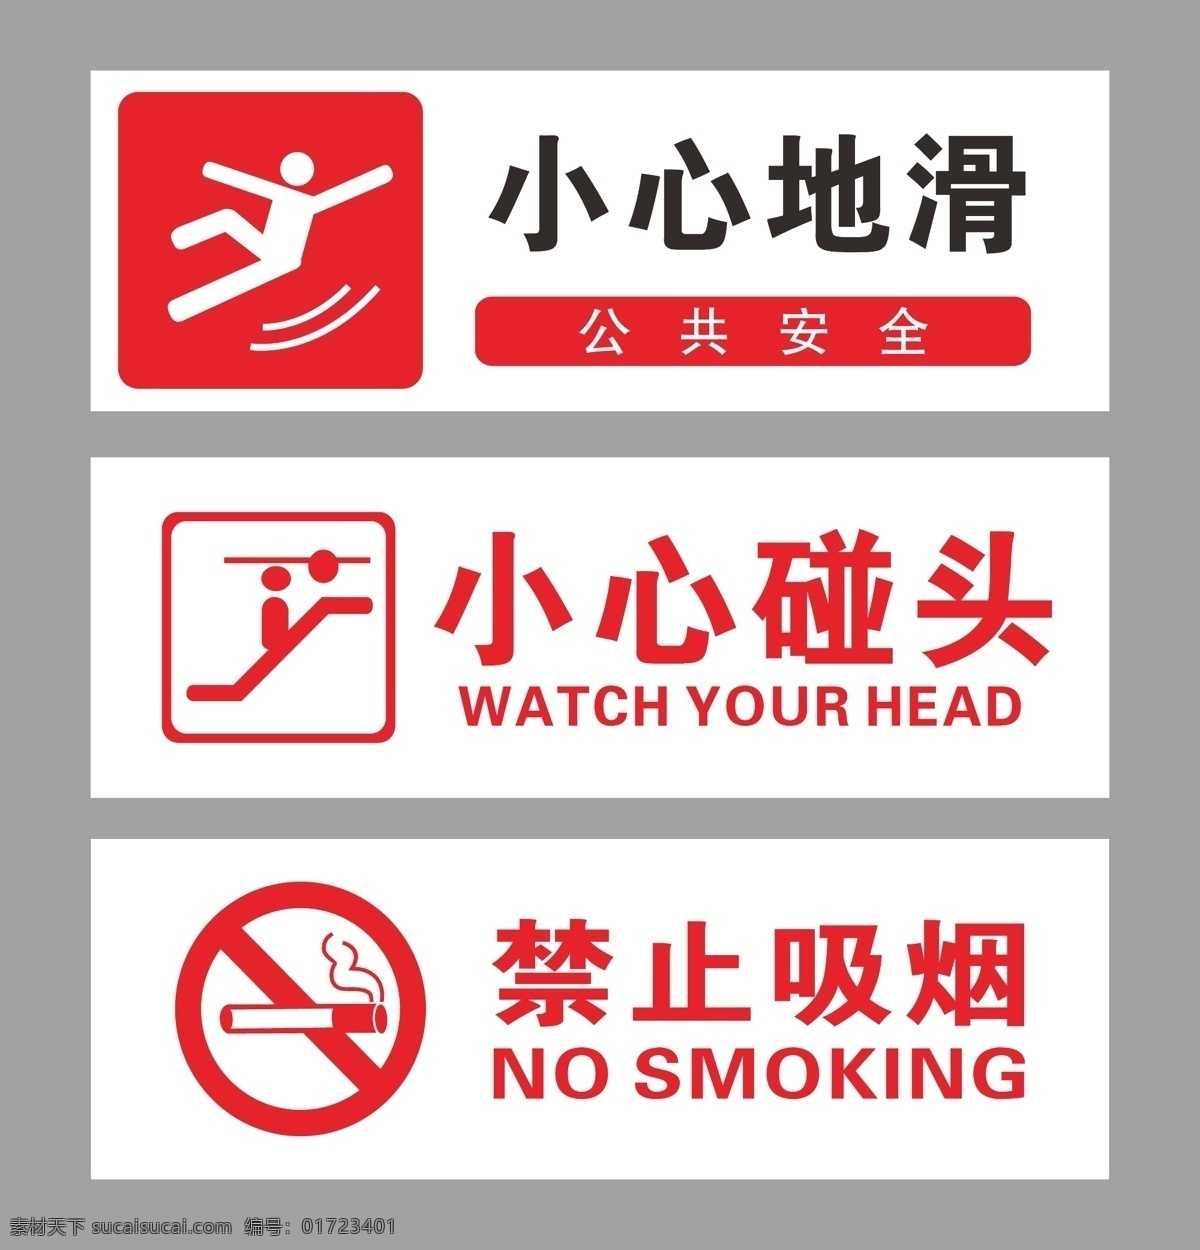 安全 提醒 海报 安全提醒海报 安全提醒 提醒海报 小心地滑 小心碰头 禁止吸烟